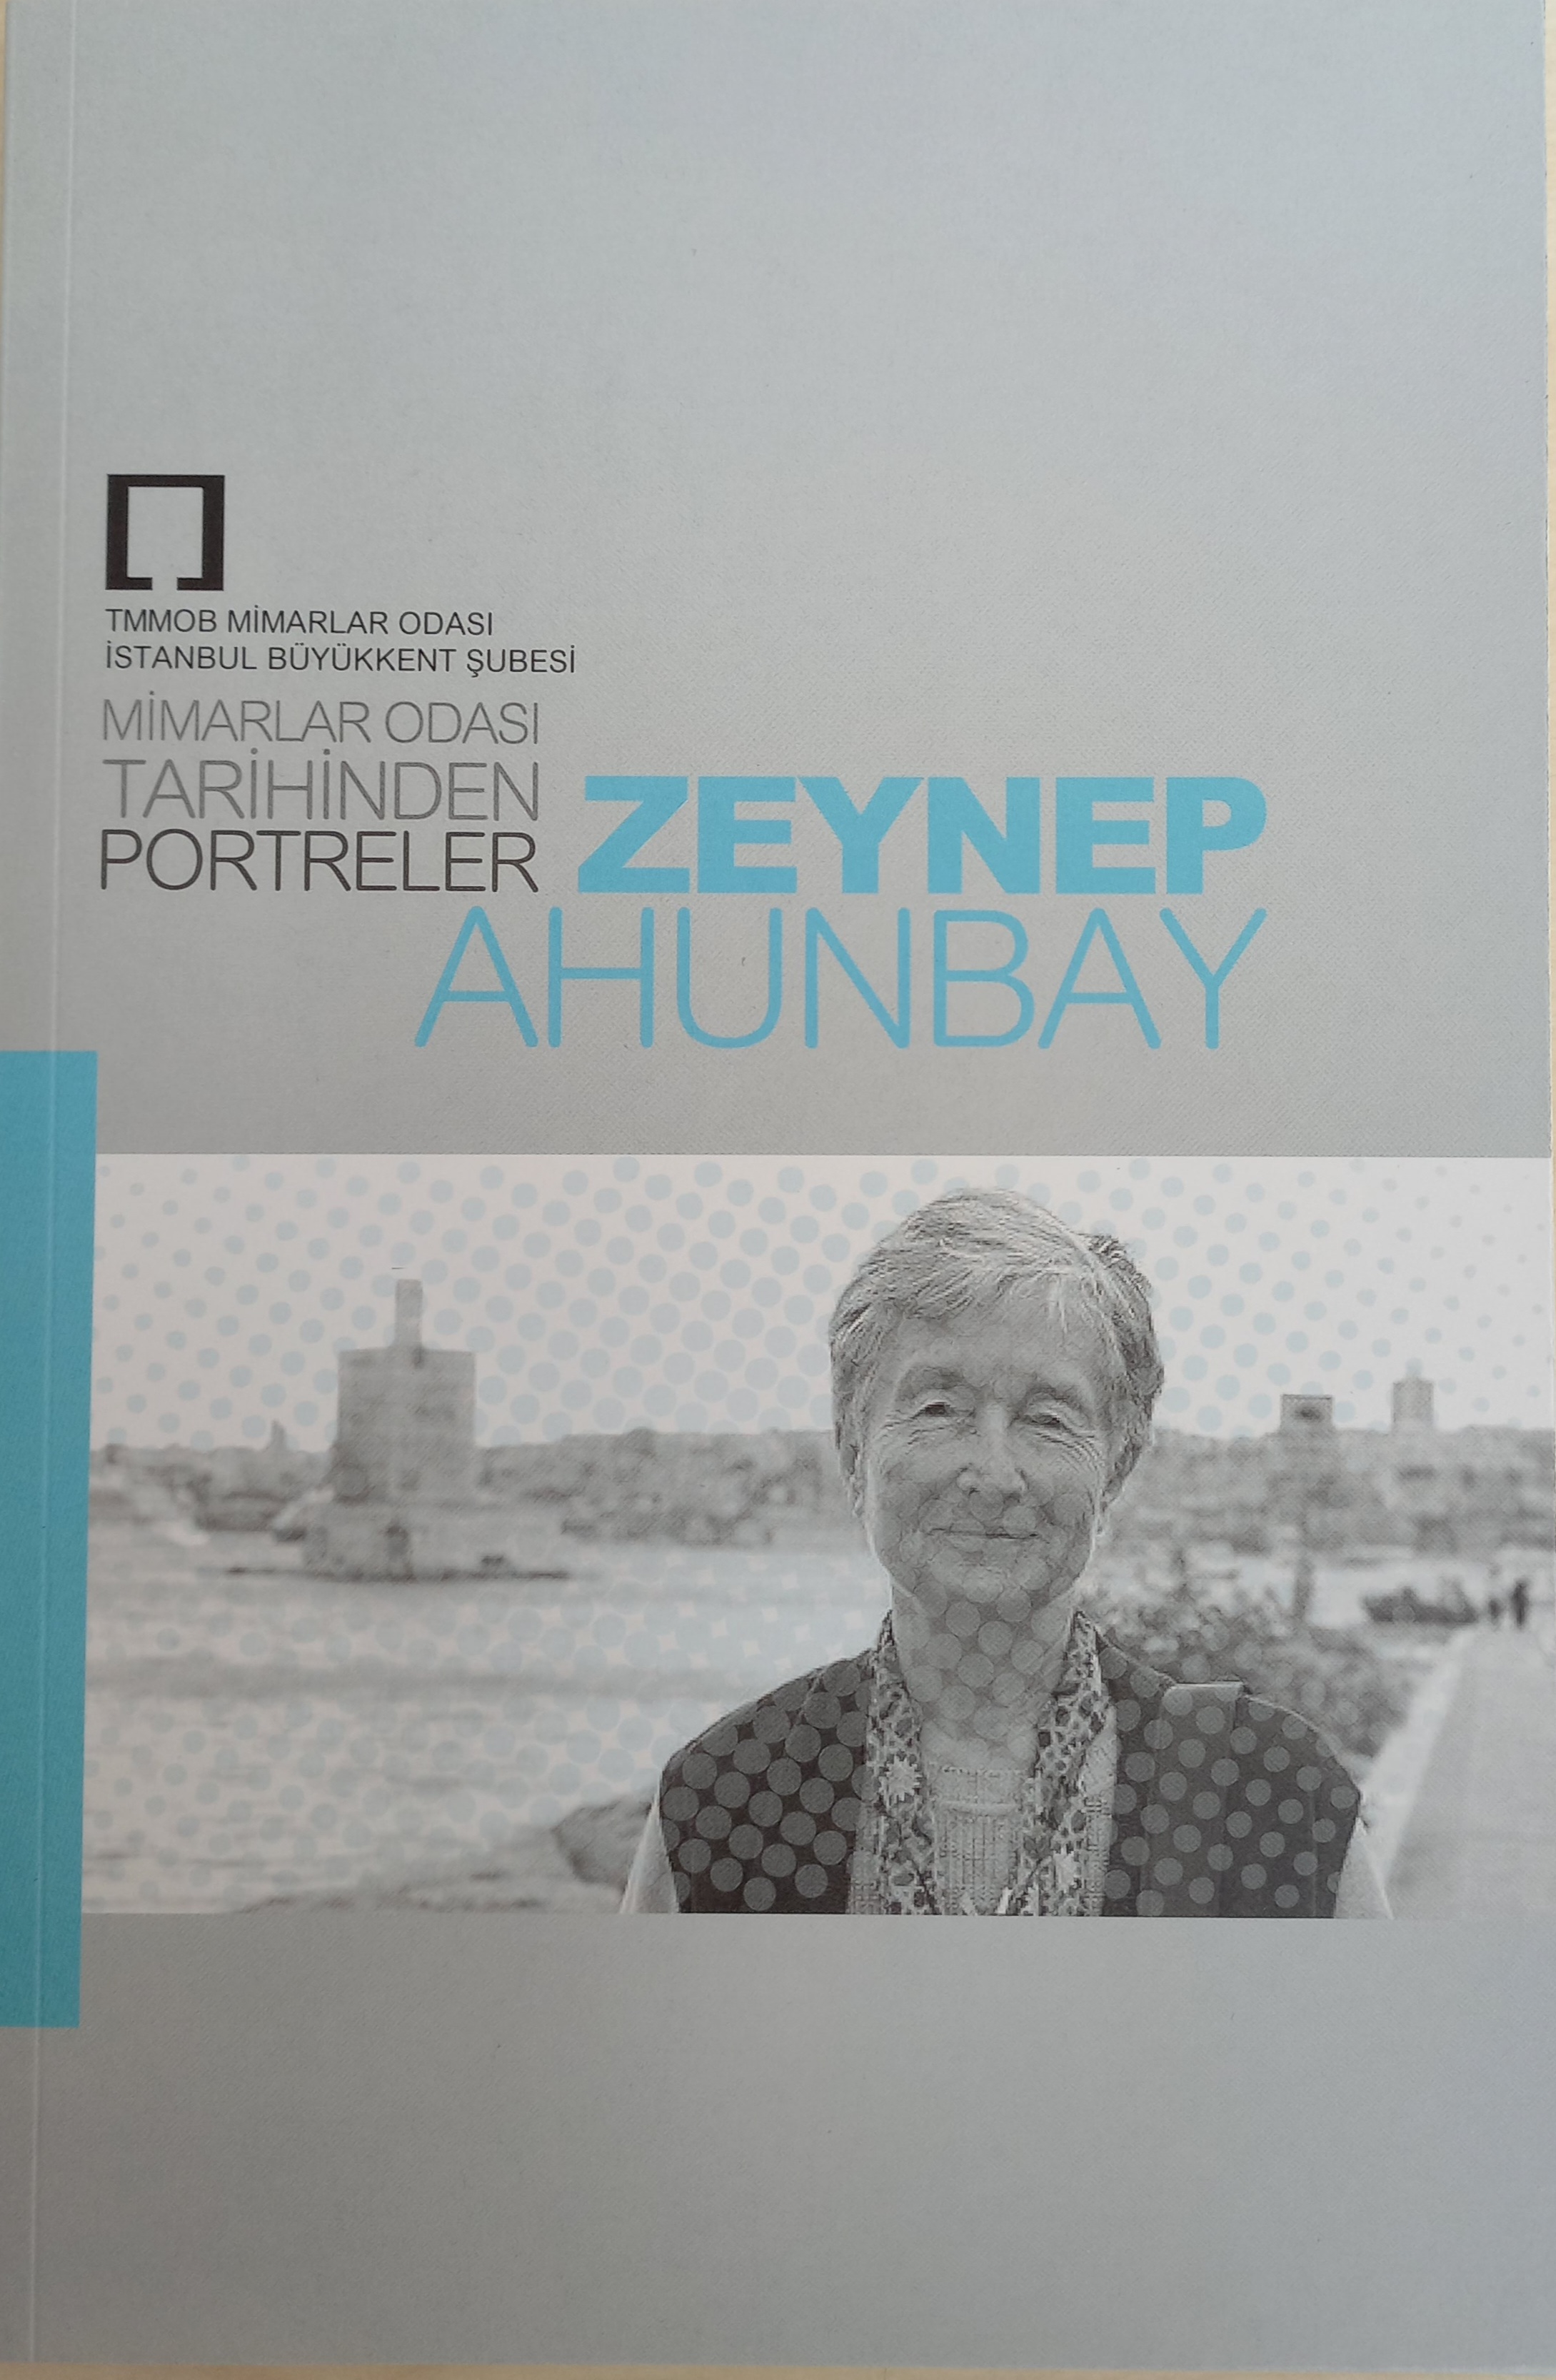 Mimarlar Odası Tarihinden Portreler: Zeynep Ahunbay